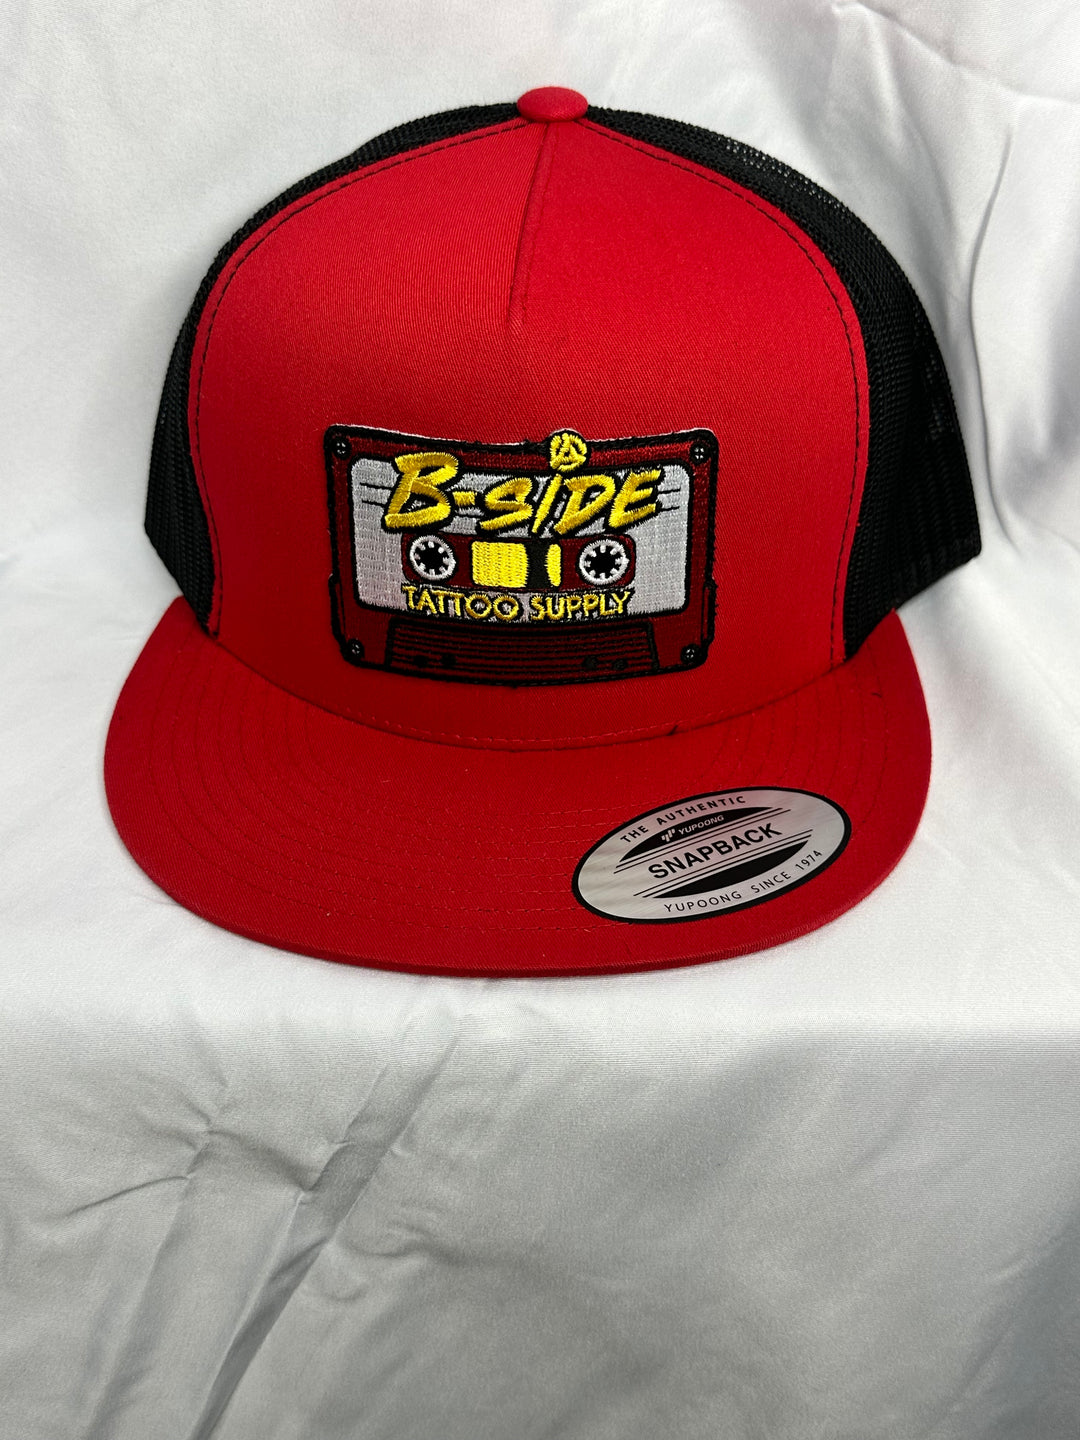 B-side Trucker Hat